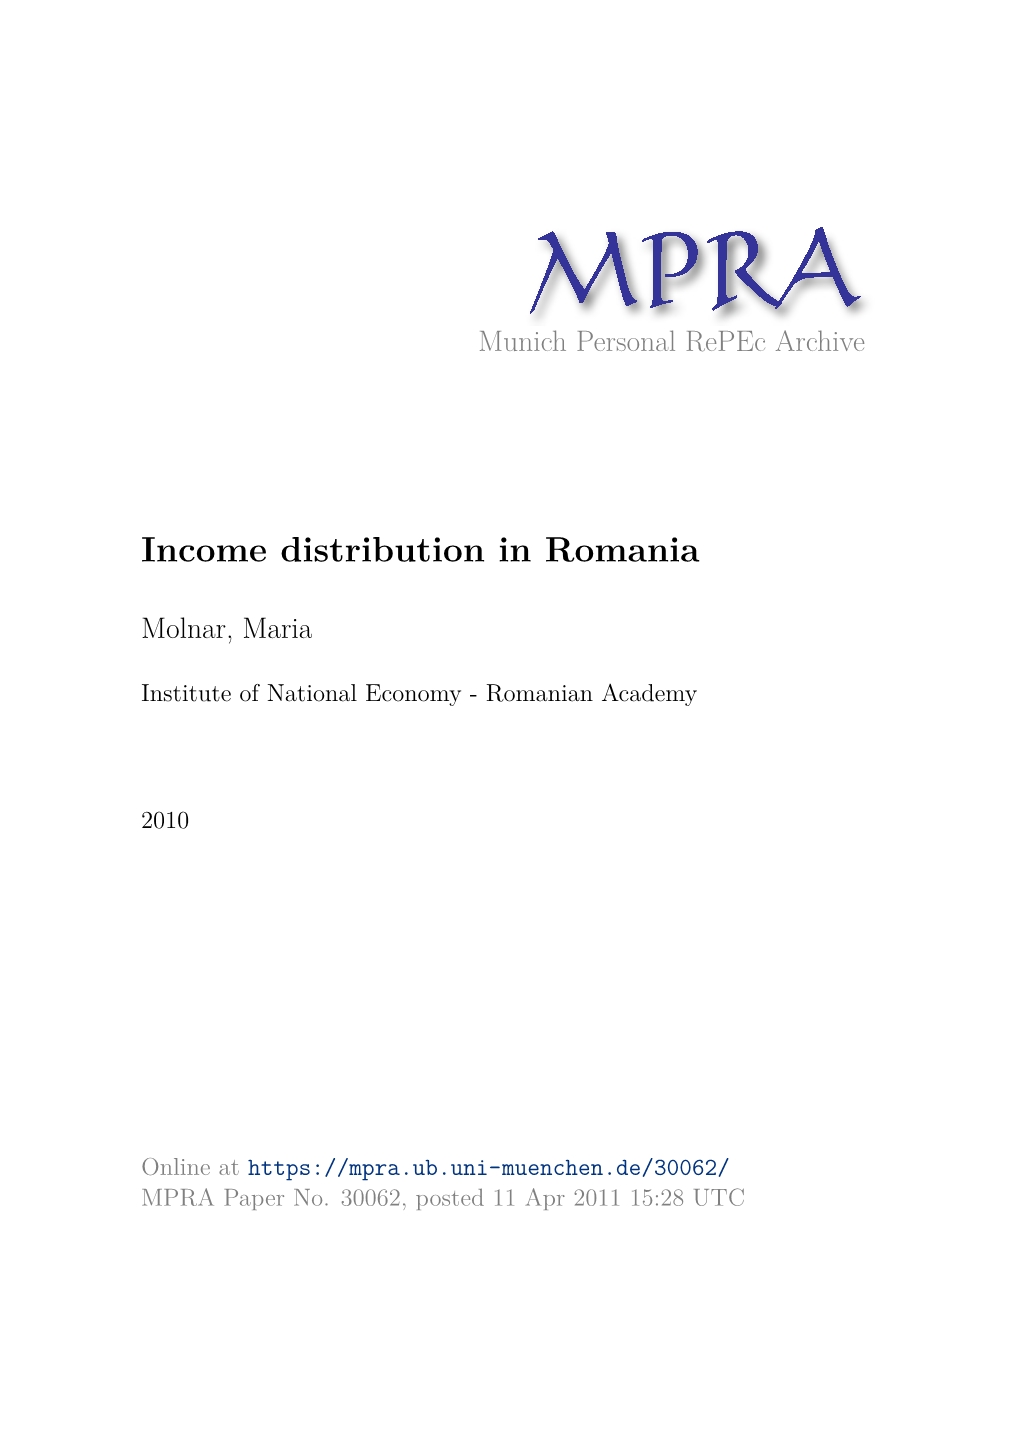 Income Distribution in Romania